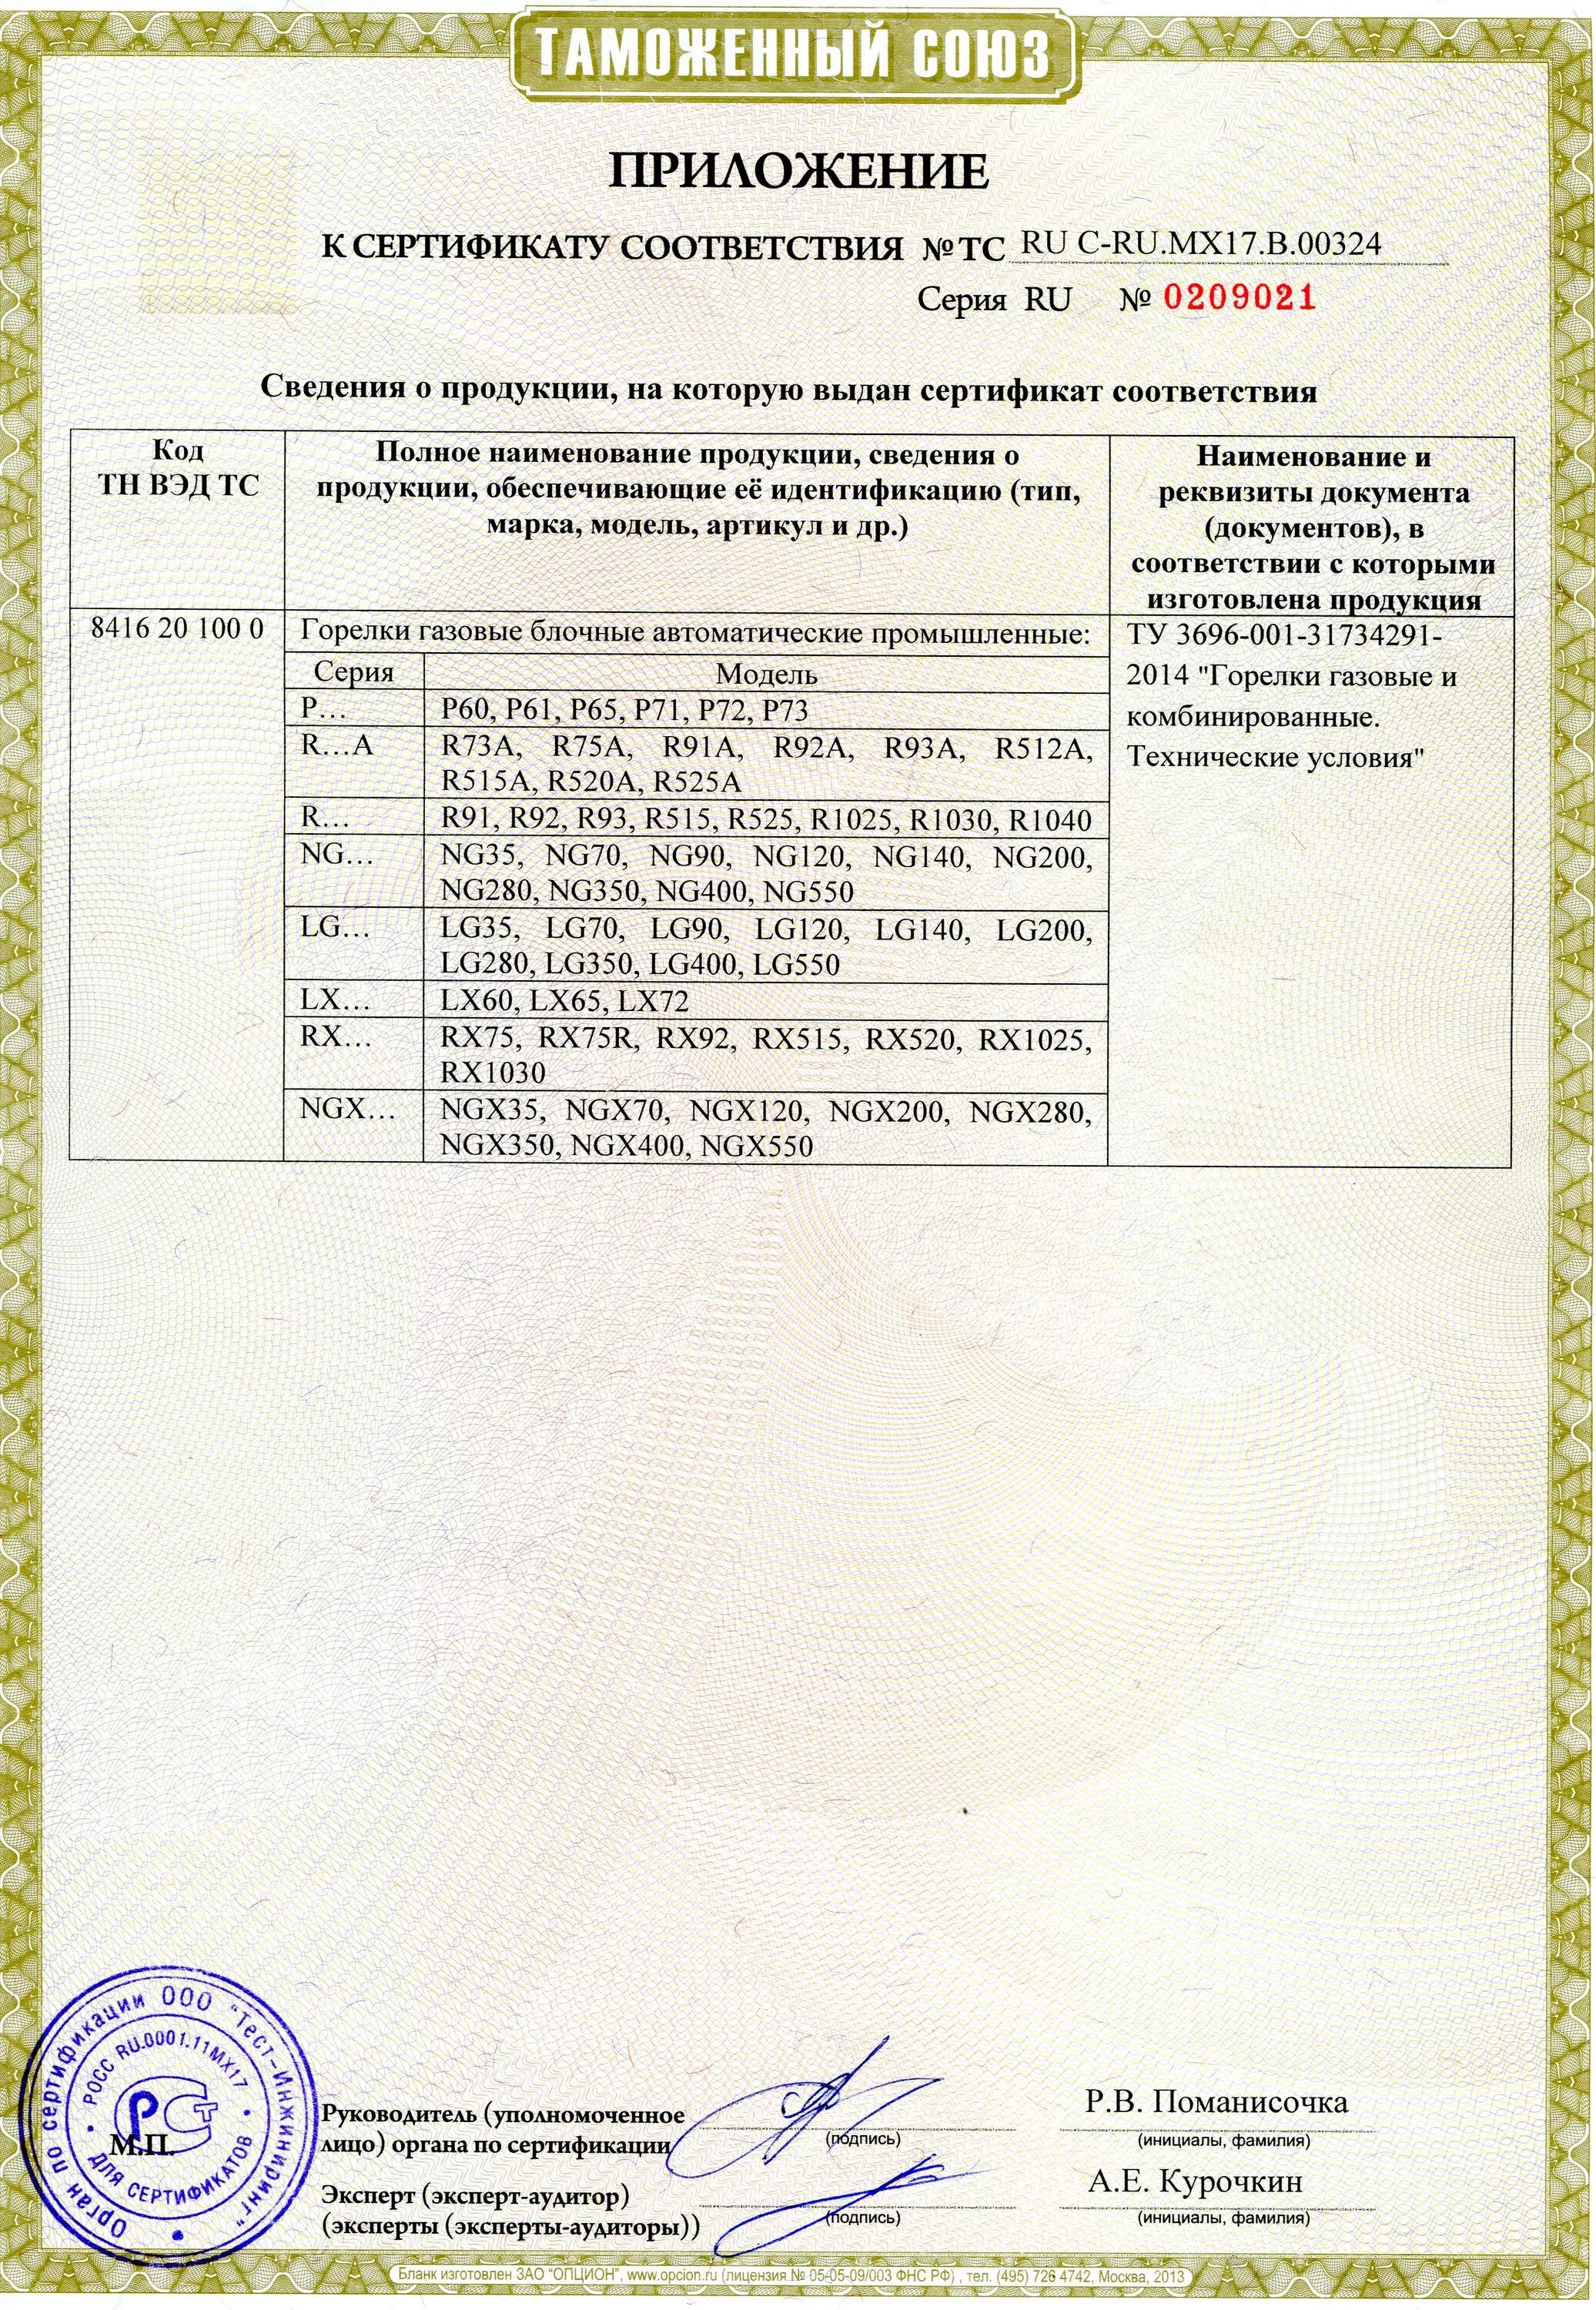 Сертификат на газовую горелку Riello rs70. Сертификат на горелки газовые CIB UNIGAS 2016. Сертификат соответствия горелка hr91a. Газовая горелка УГОП-П-16 сертификация сертификат.